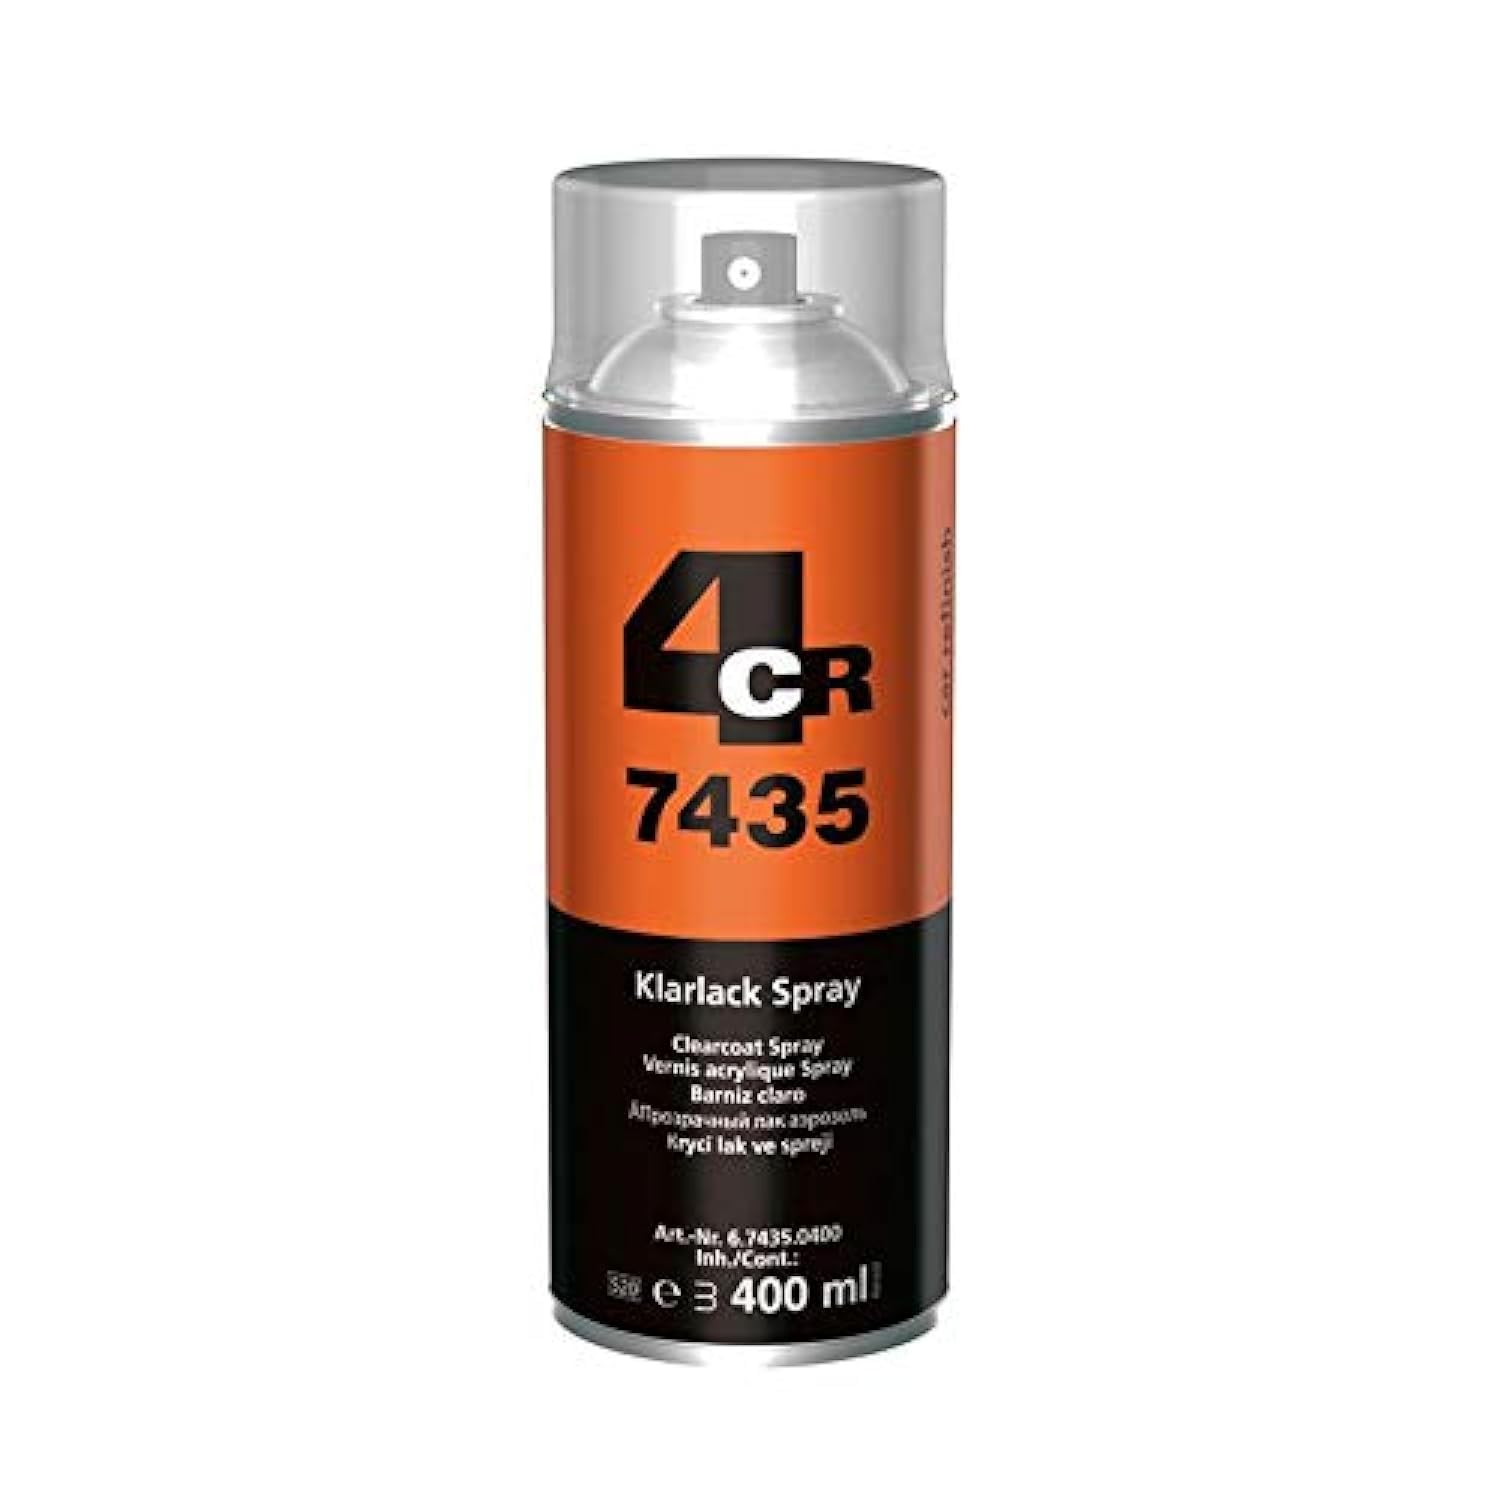 4CR 6.7435.0400 Klarlack Spray 400 ml von 4CR